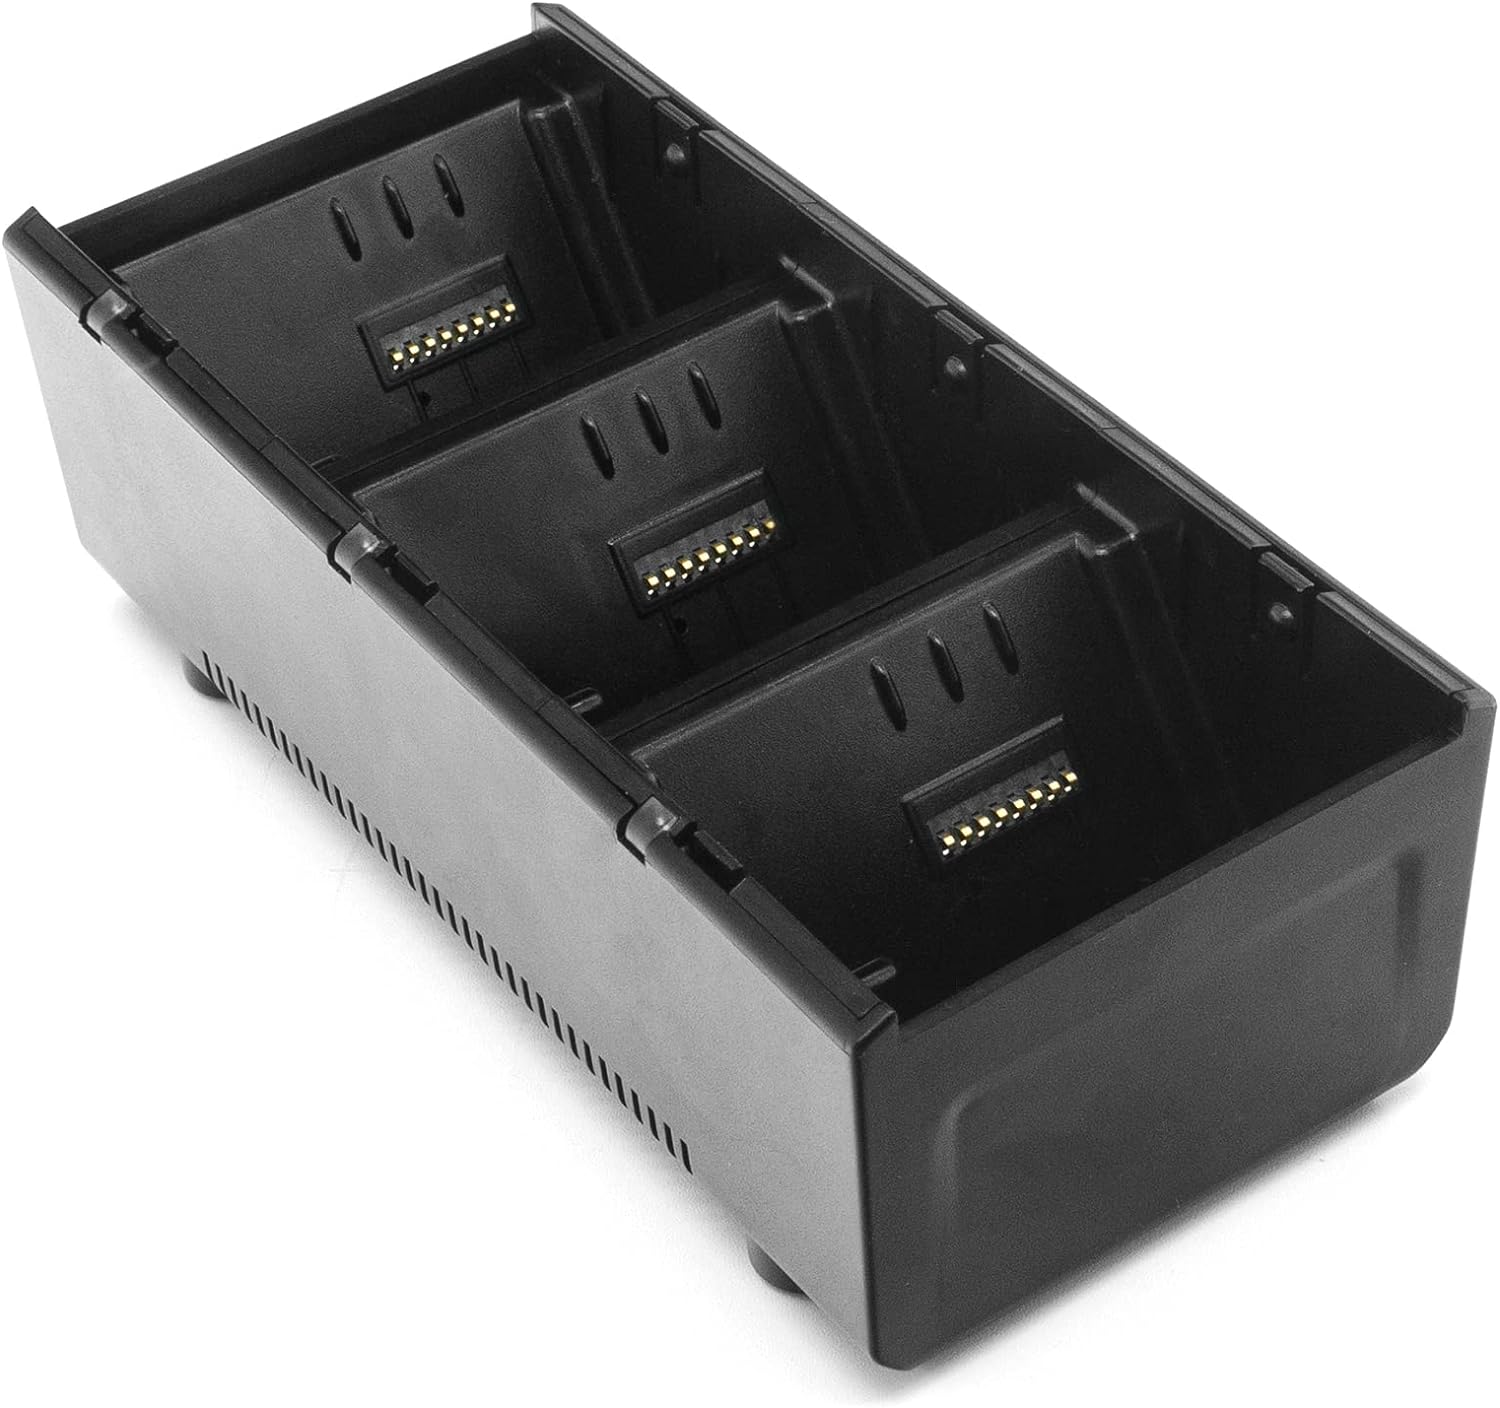 Kit de base de carga de batería de 3 ranuras para Zebra ZQ510, ZQ511, ZQ520, ZQ521, ZQ610, ZQ620, ZQ630, QLN220, QLN320, QLN420 escáneres de código de barras, cargador de batería incluida